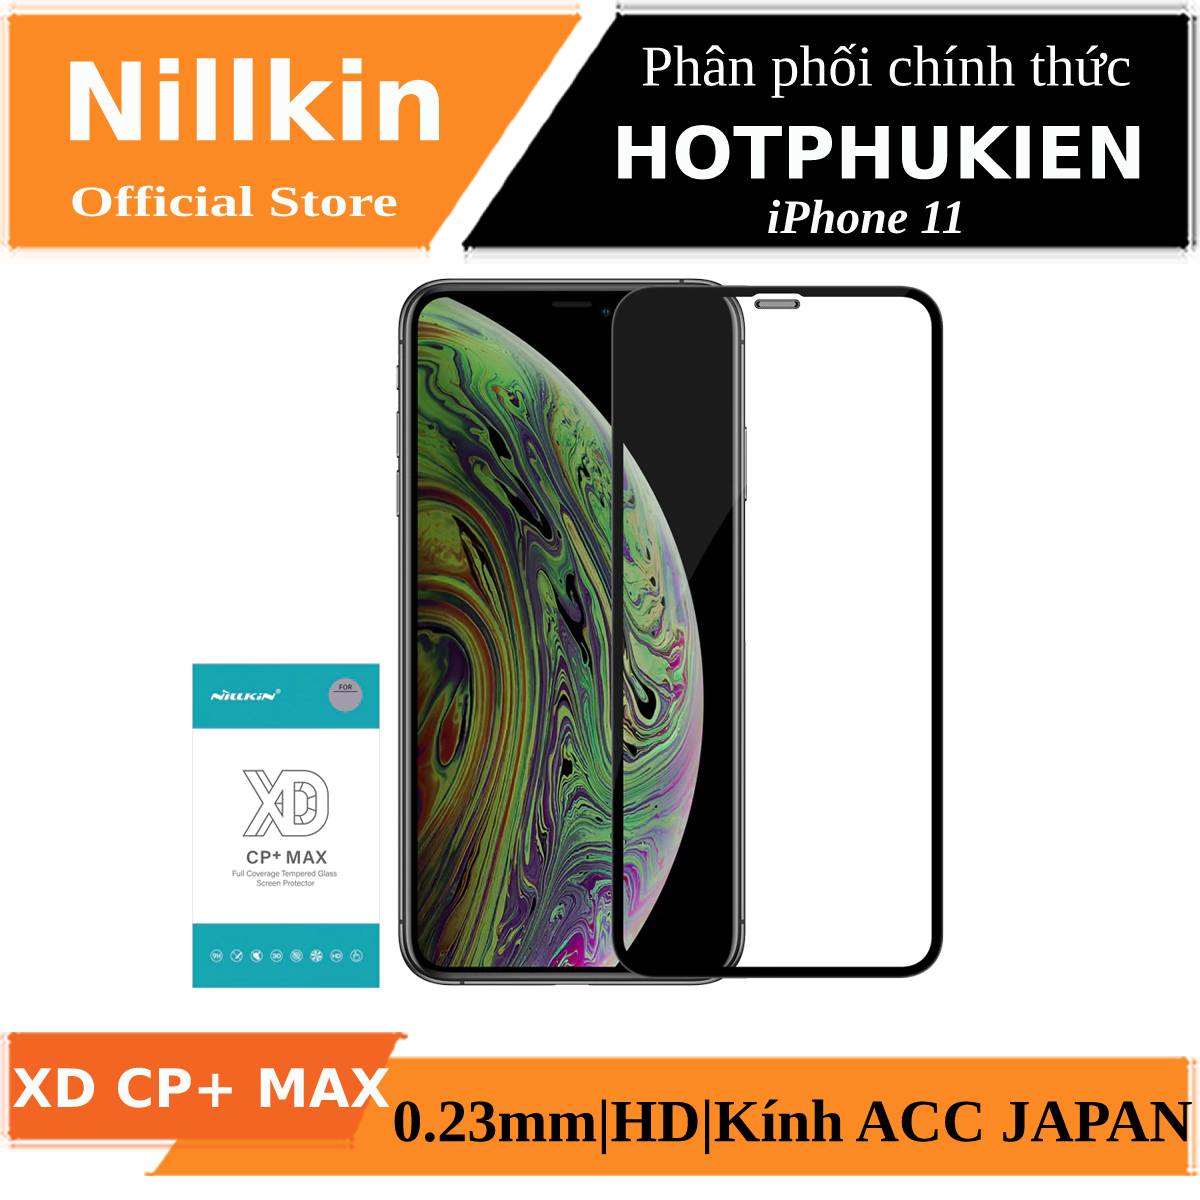 Miếng dán kính cường lực full 3D cho iPhone 11 hiệu Nillkin XD CP+ Max